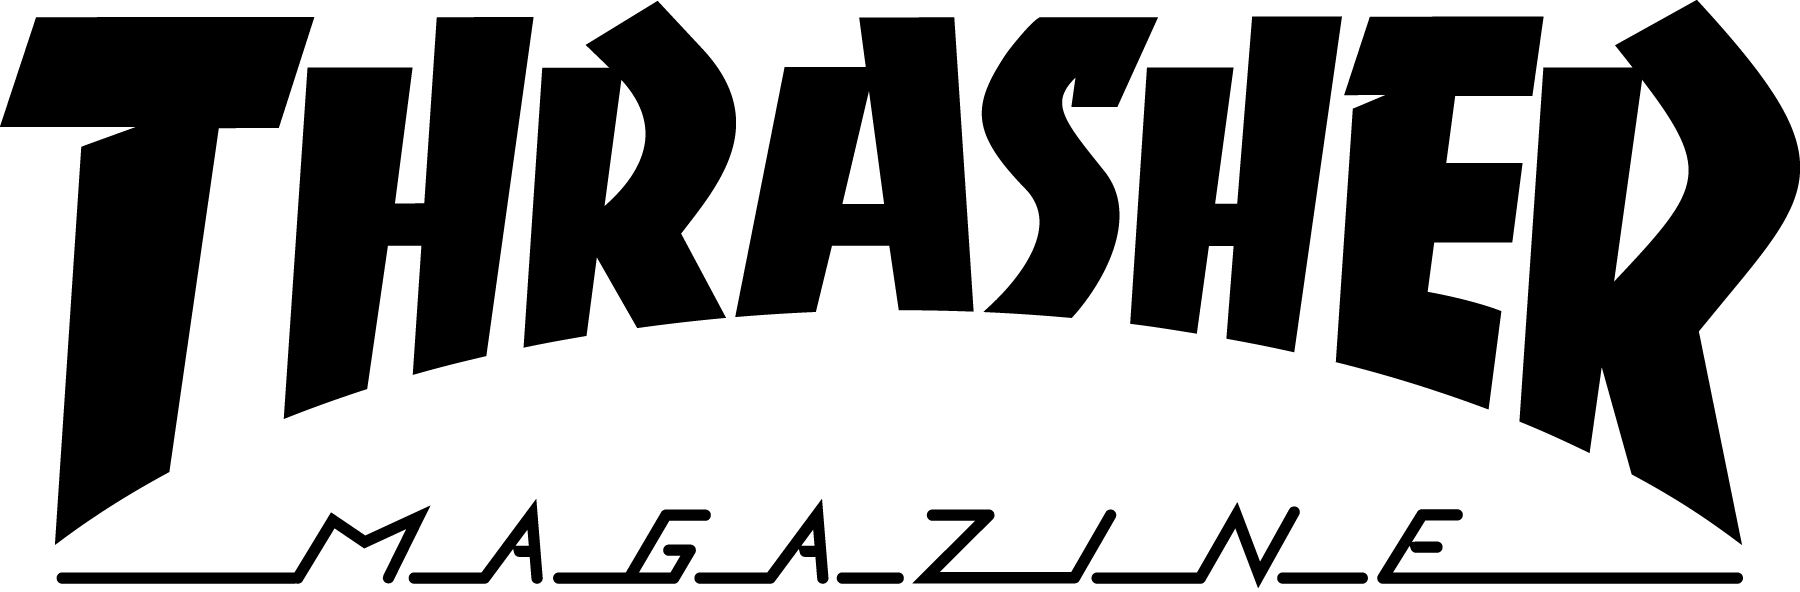 The world-famous Thrasher Magazine Logo.